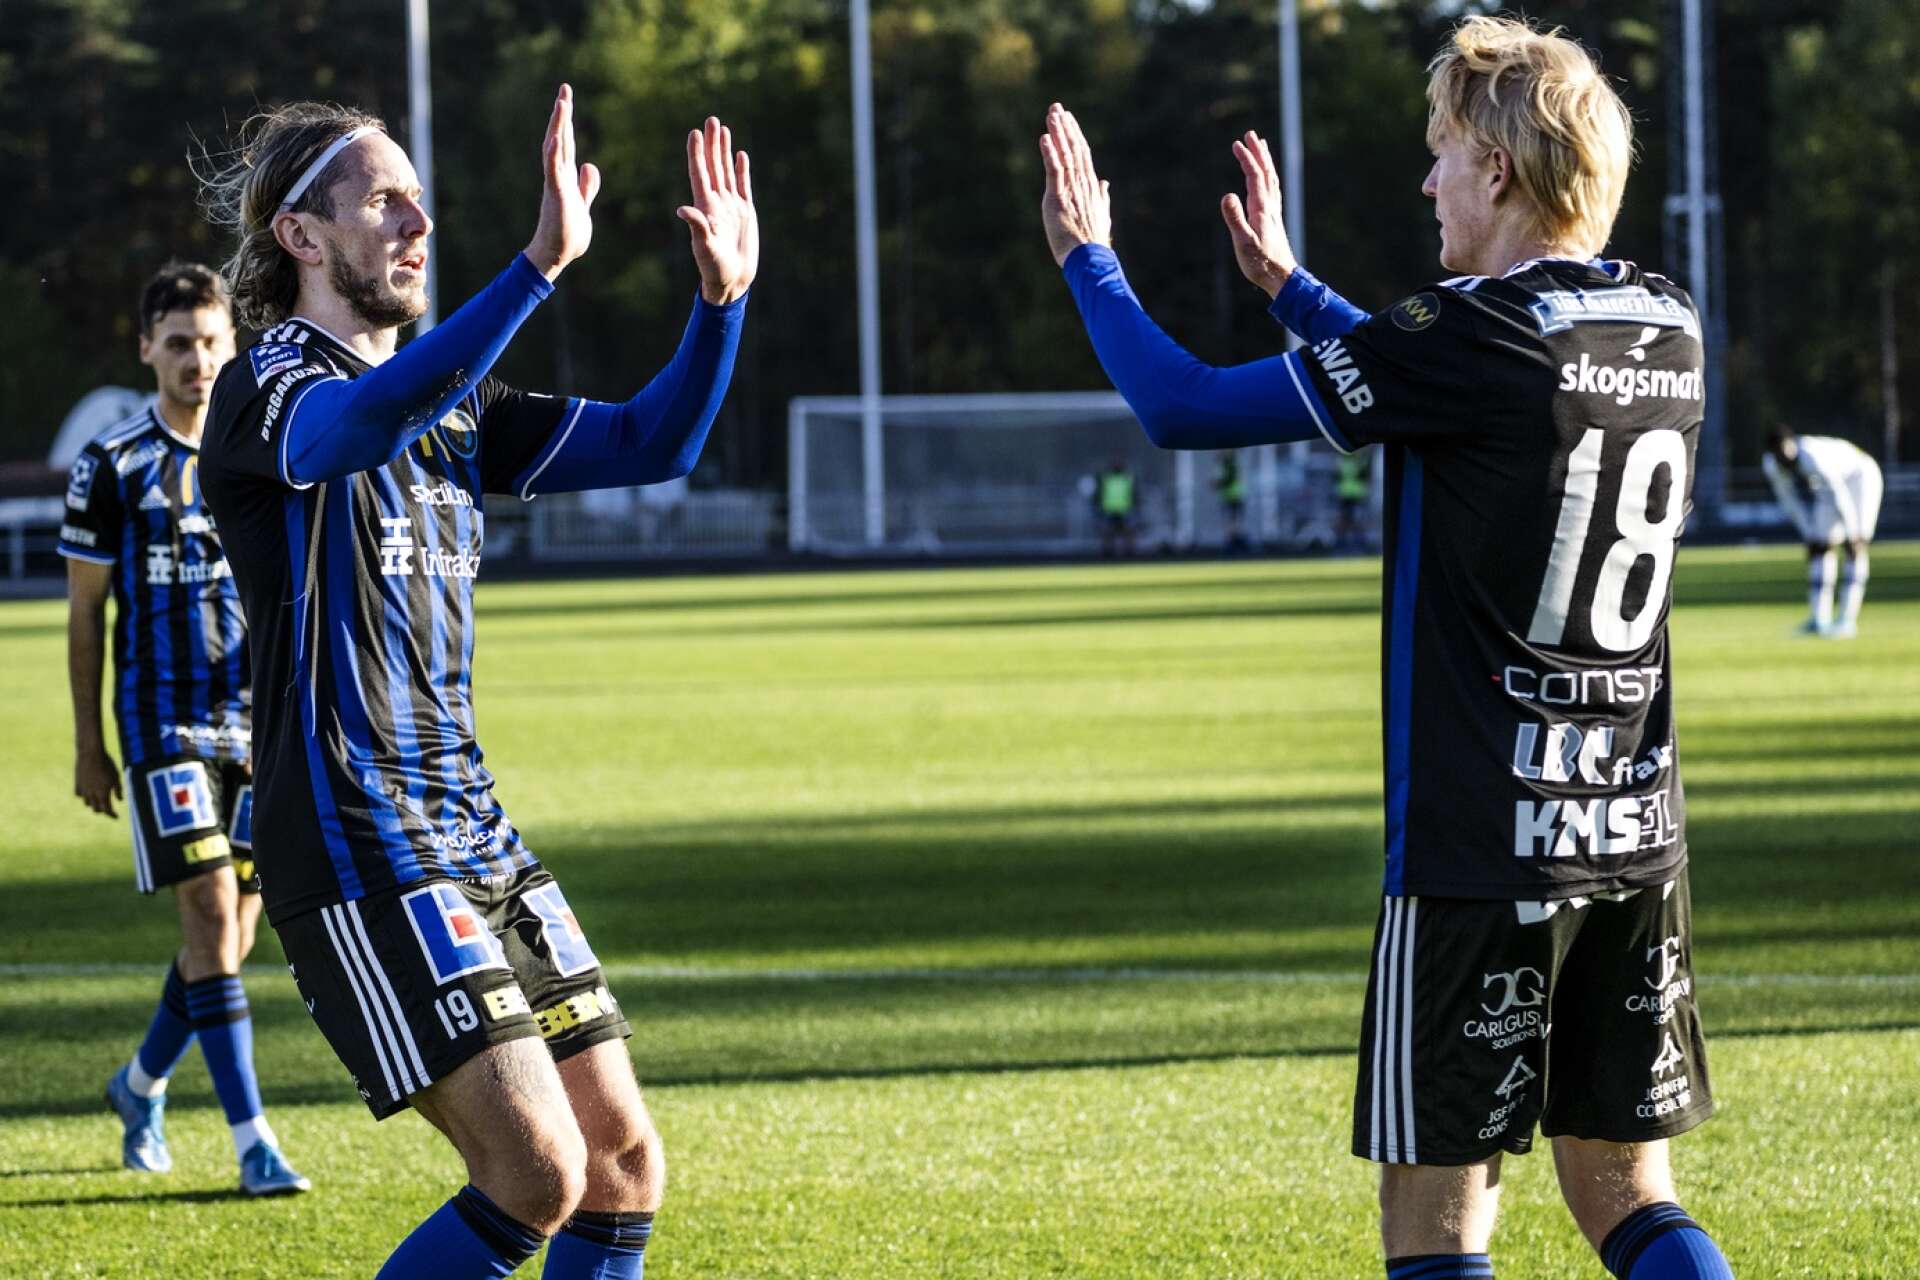 Får David Johannesson och Jacob Ericsson jubla igen när Karlstad Fotboll tar emot Örebro Syrianska under fredagskvällen?